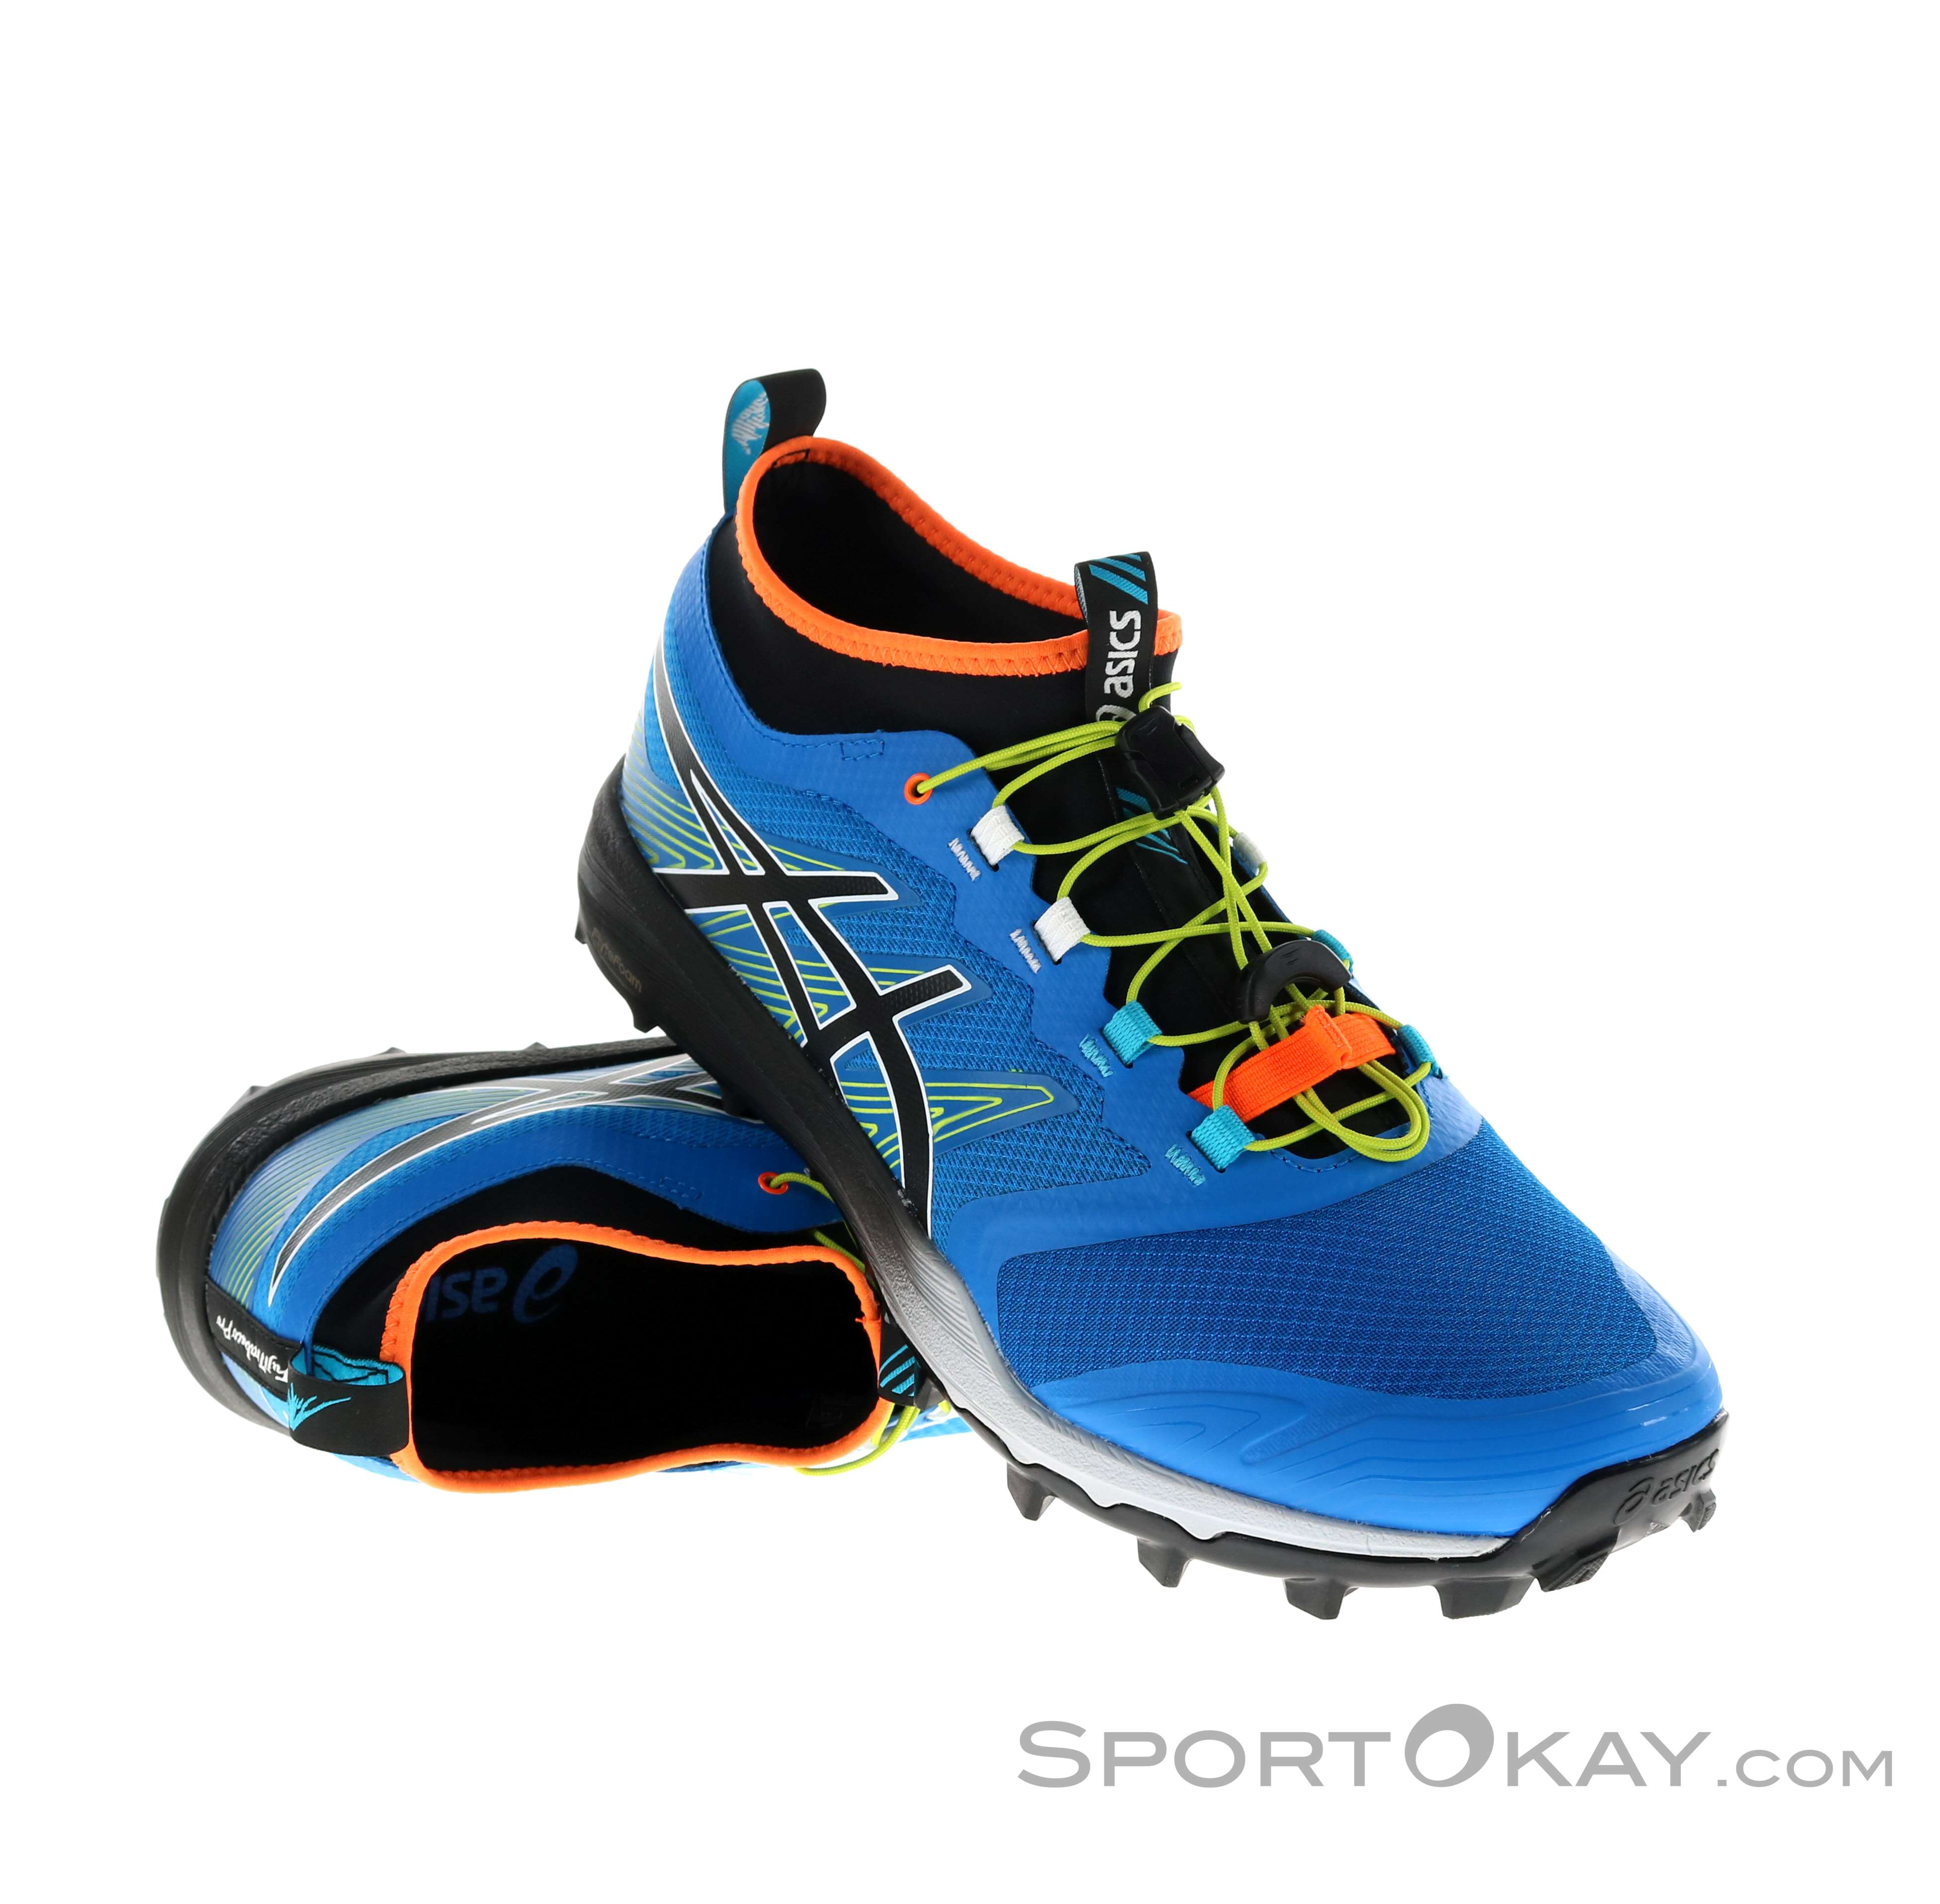 Asics Fujitrabuco Pro Uomo Scarpe da Trail Running - Scarpe da trail  running - Scarpe da corsa - Corsa - Tutti